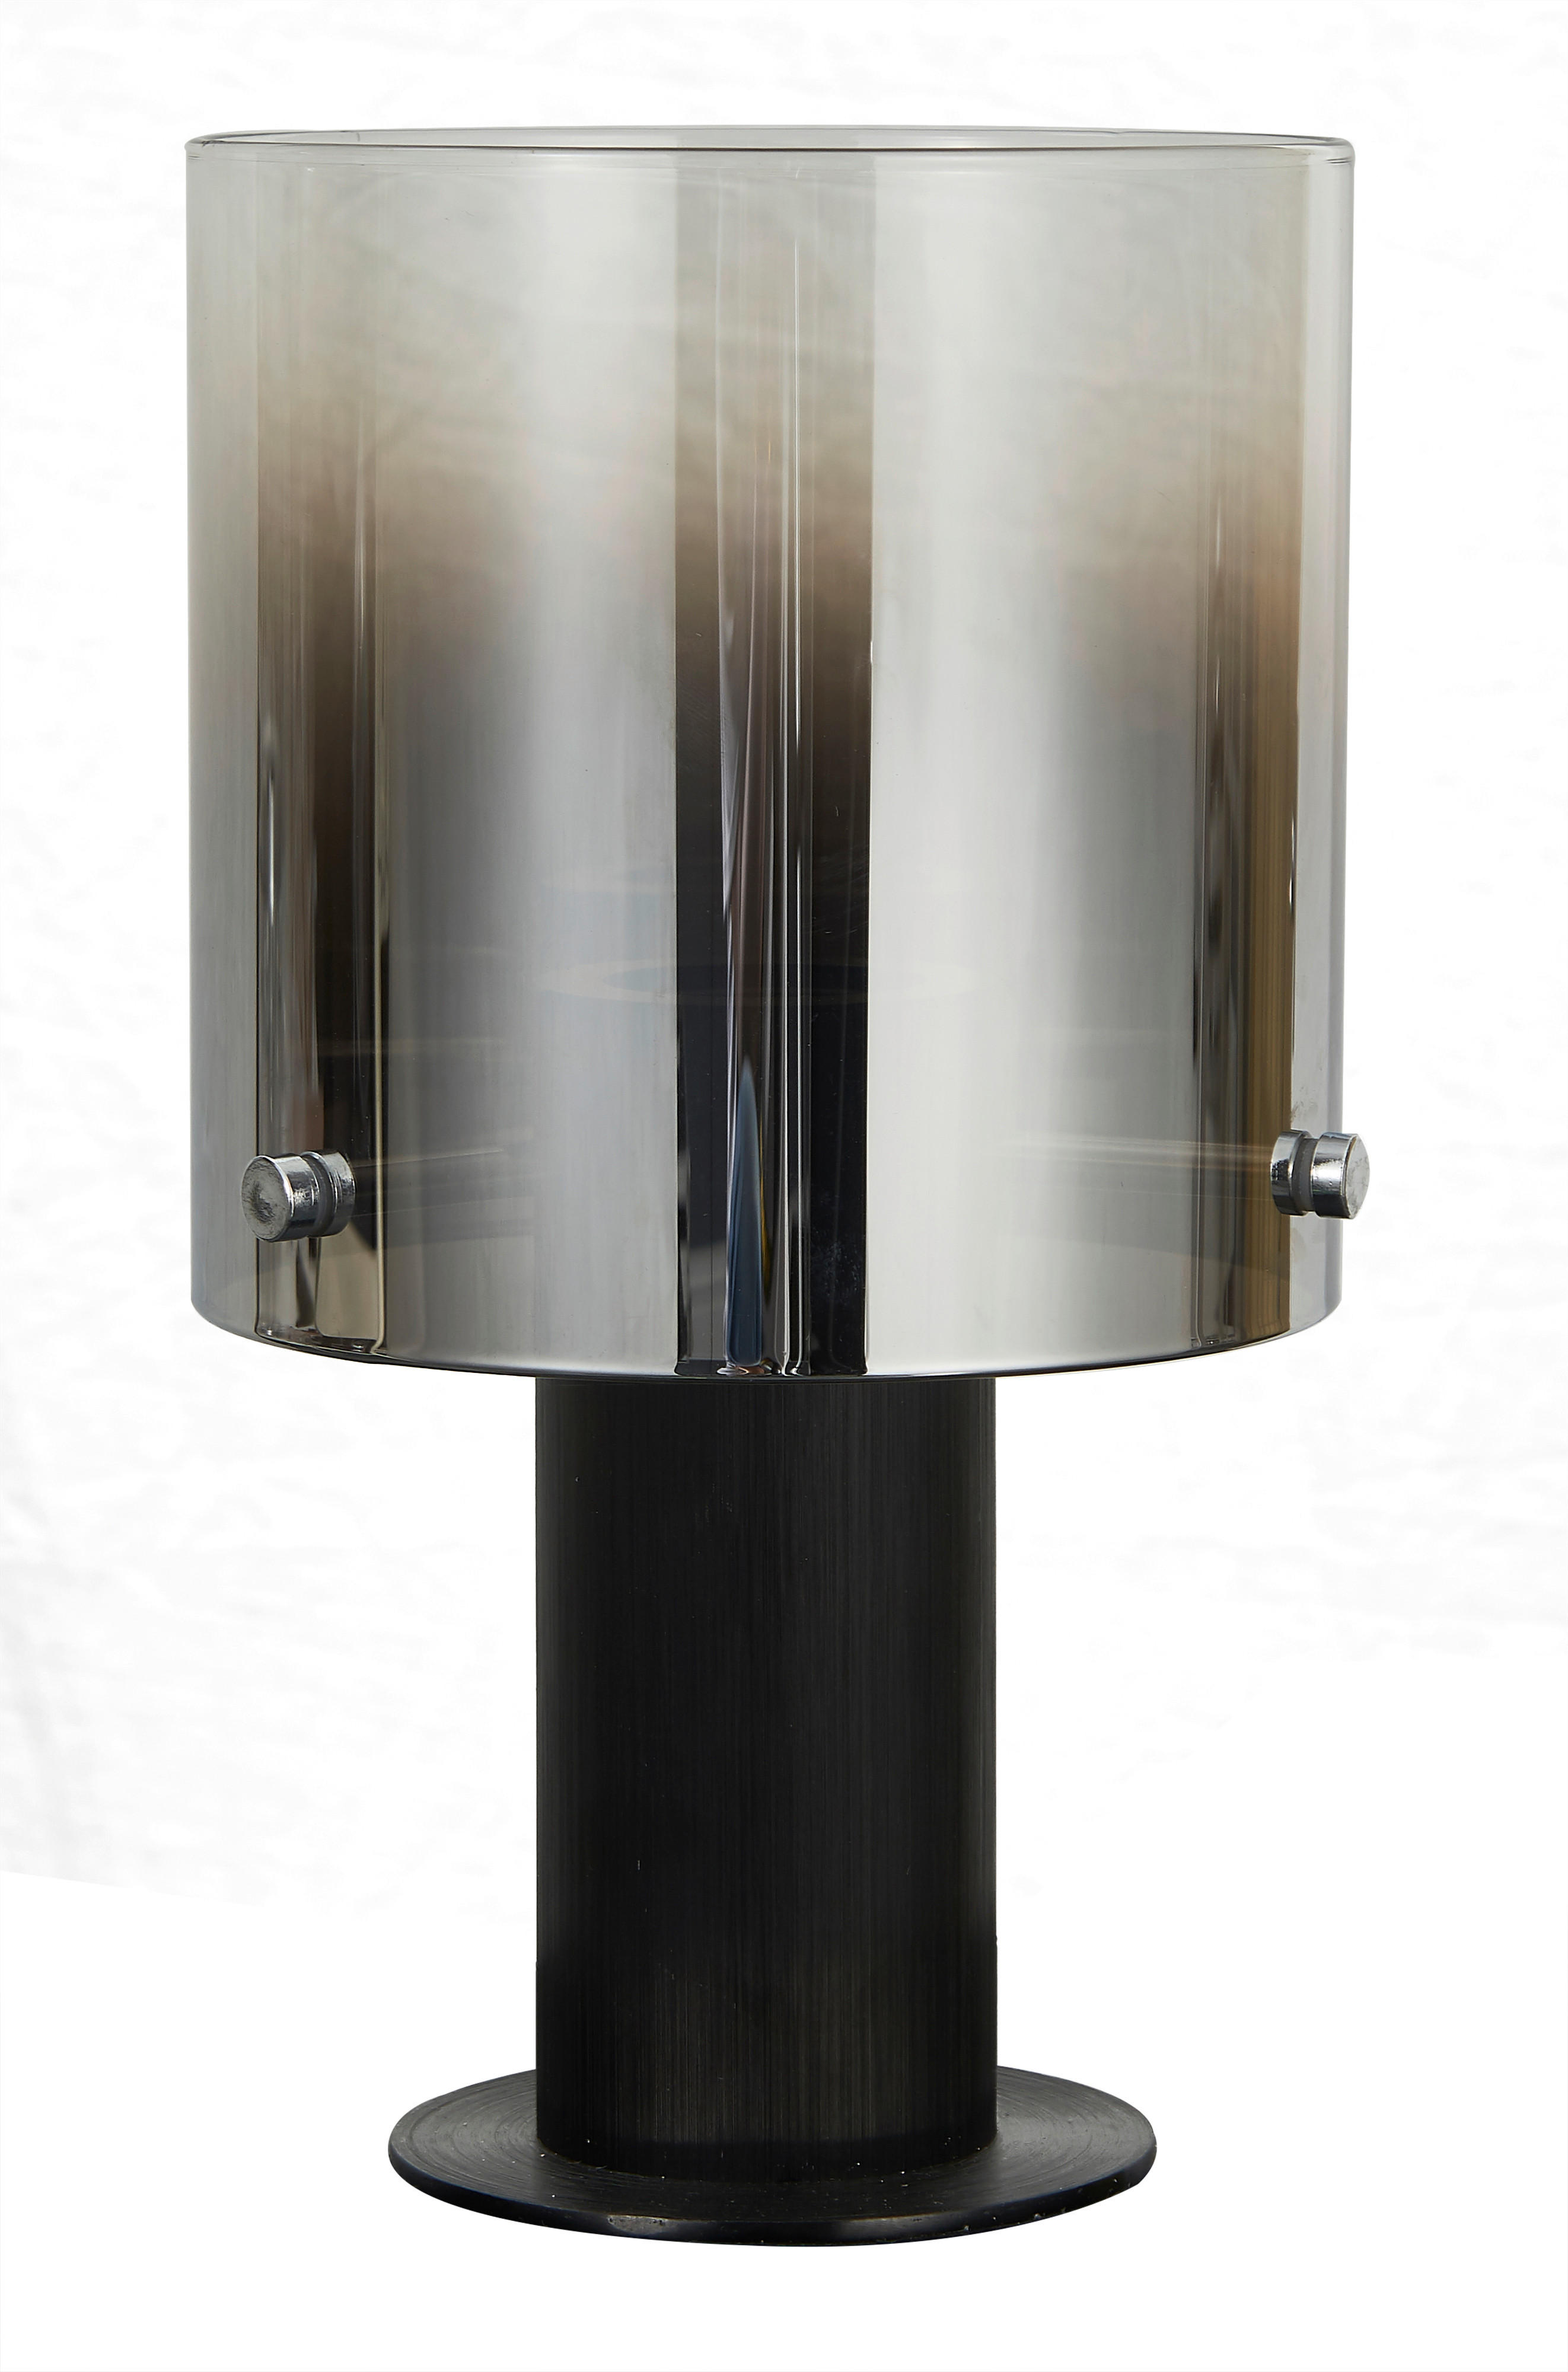 BORDSLAMPA 15/26 cm   - mörkgrå/svart, Design, metall/glas (15/26cm) - Dieter Knoll